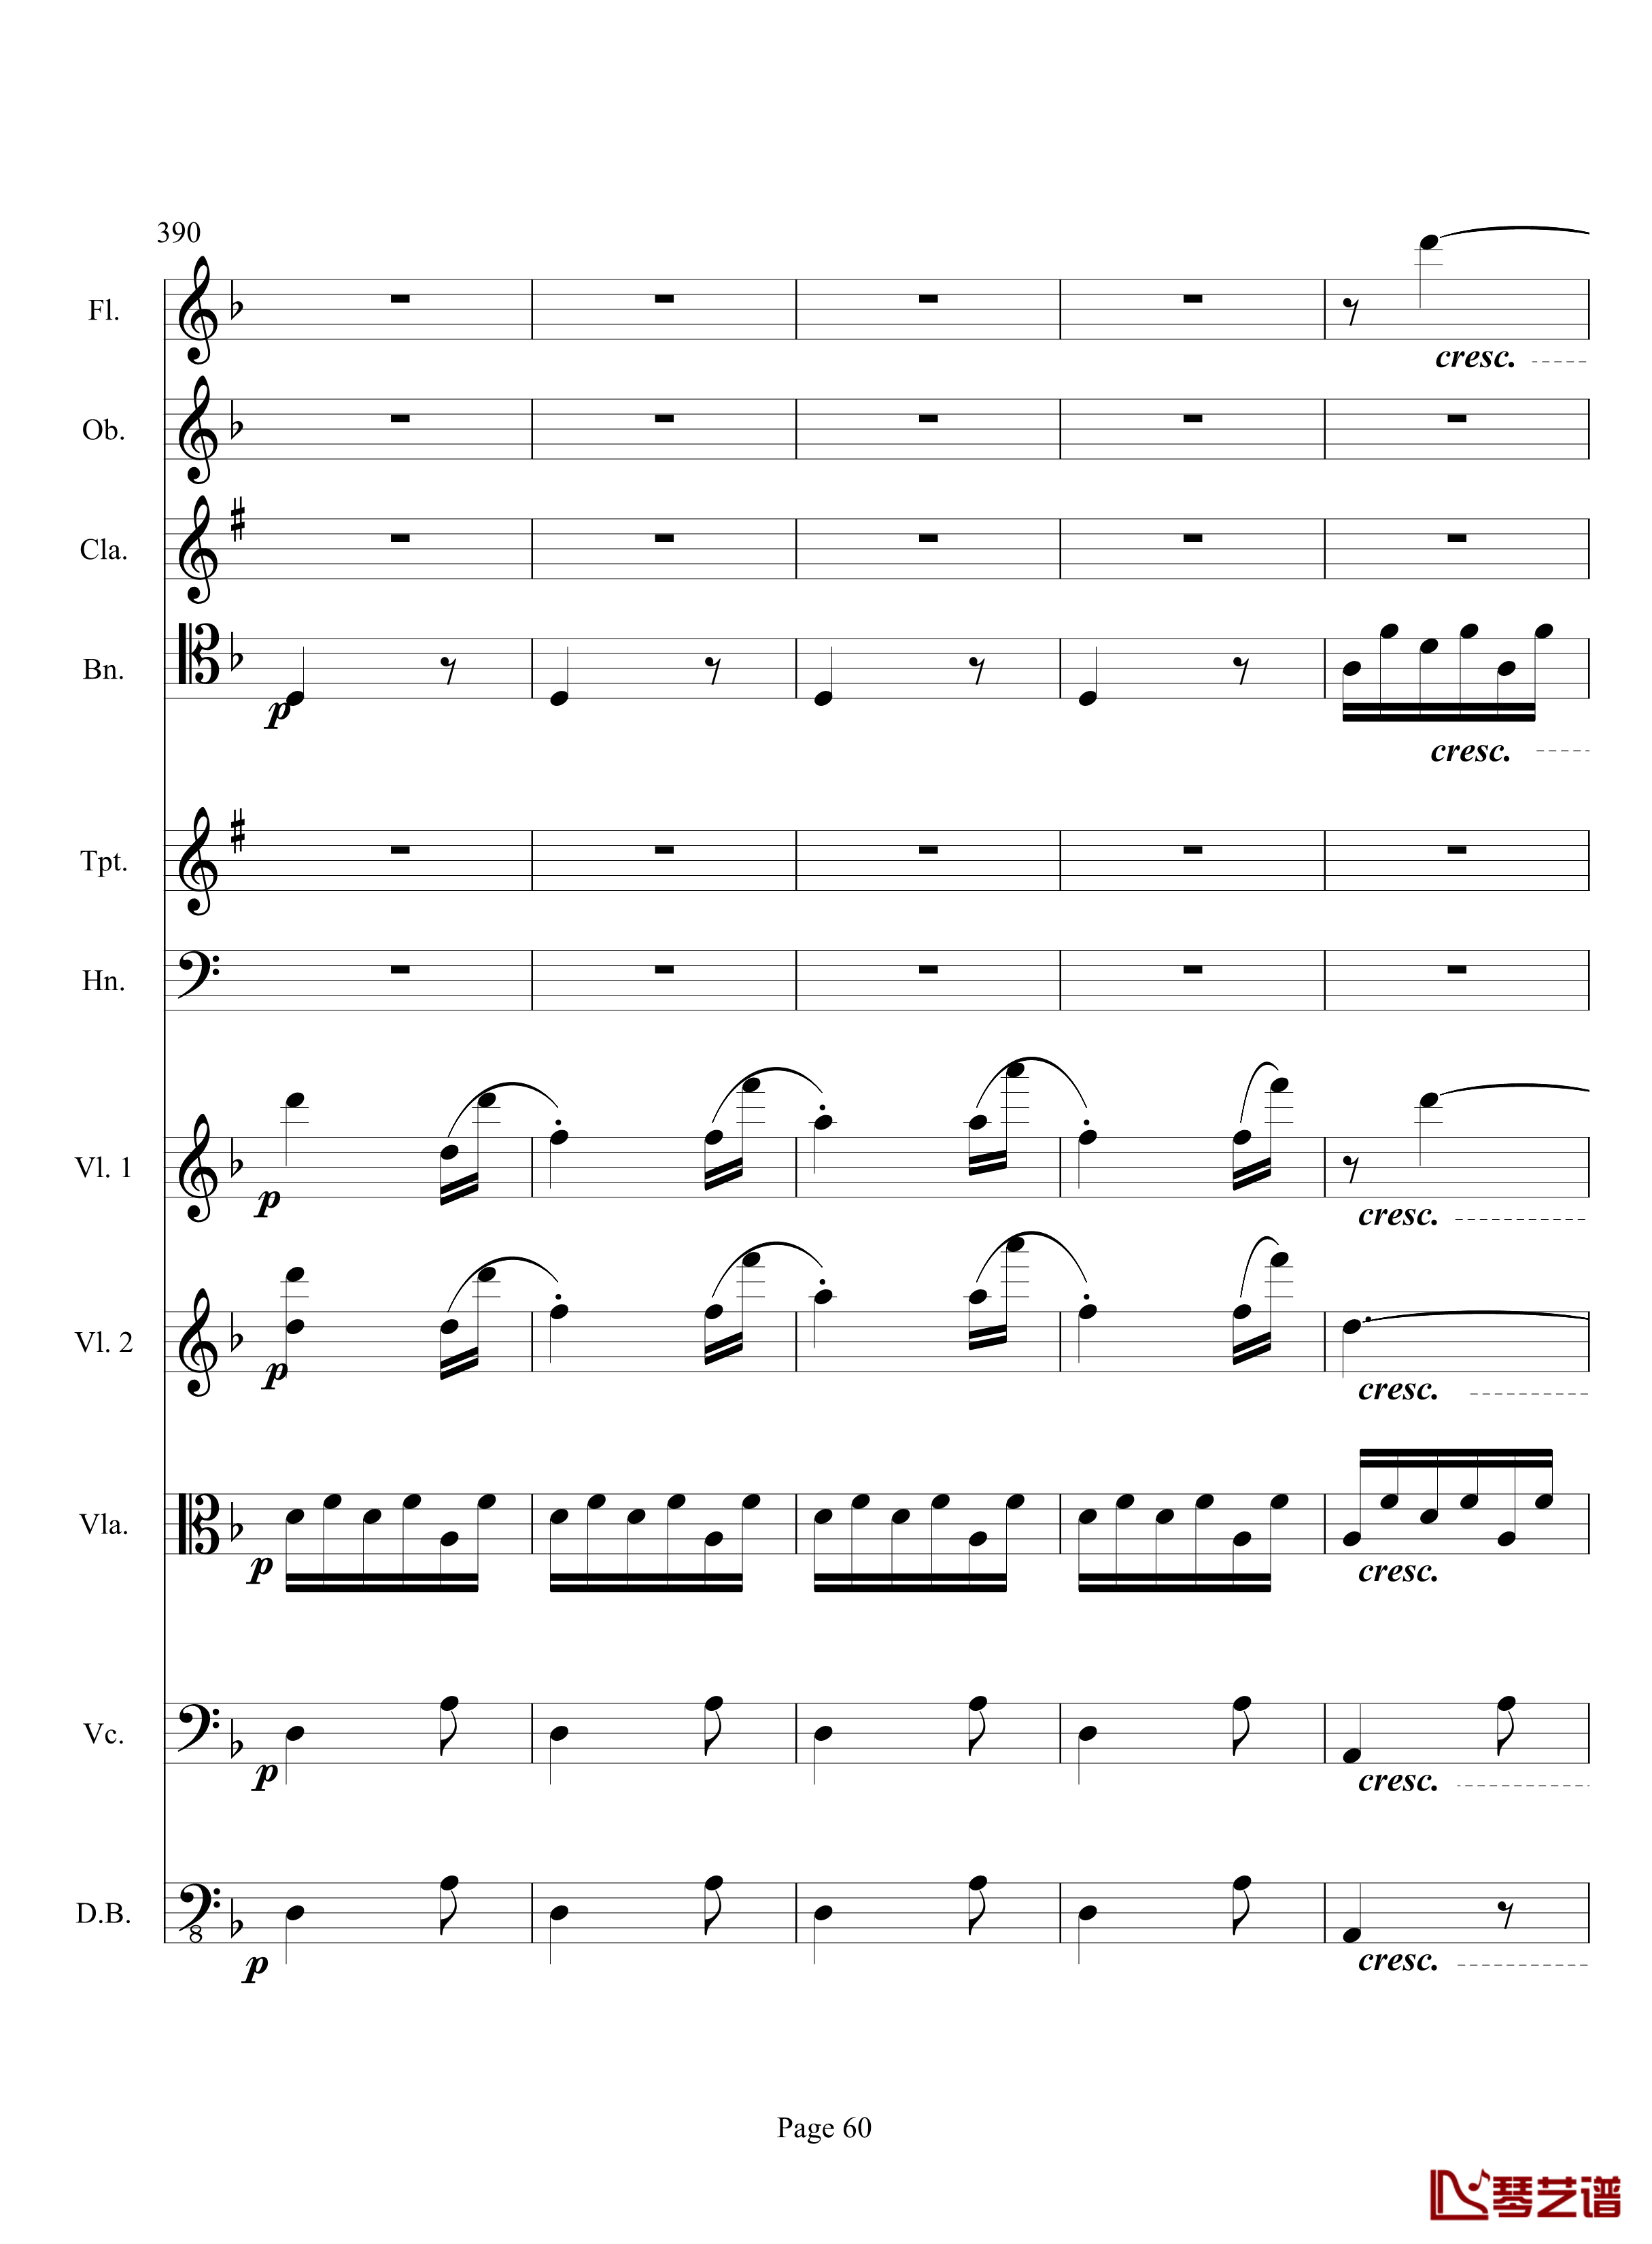 奏鸣曲之交响钢琴谱-第17首-Ⅲ-贝多芬-beethoven60